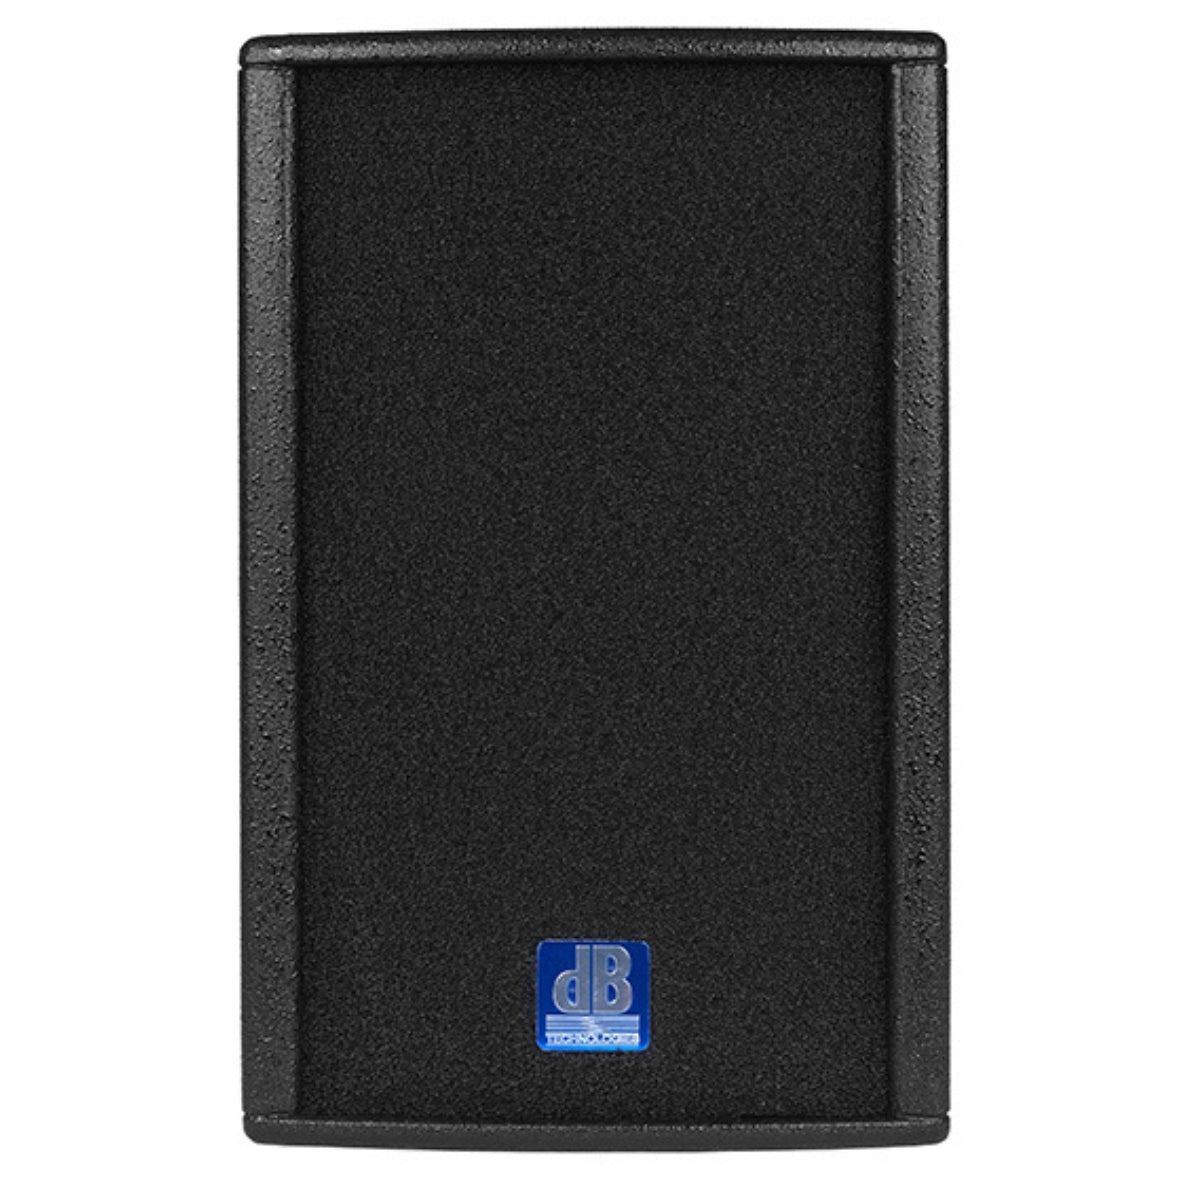 dB Technologies 2-Way 10" 600-Watt Passive Speaker ARENA 10 Front